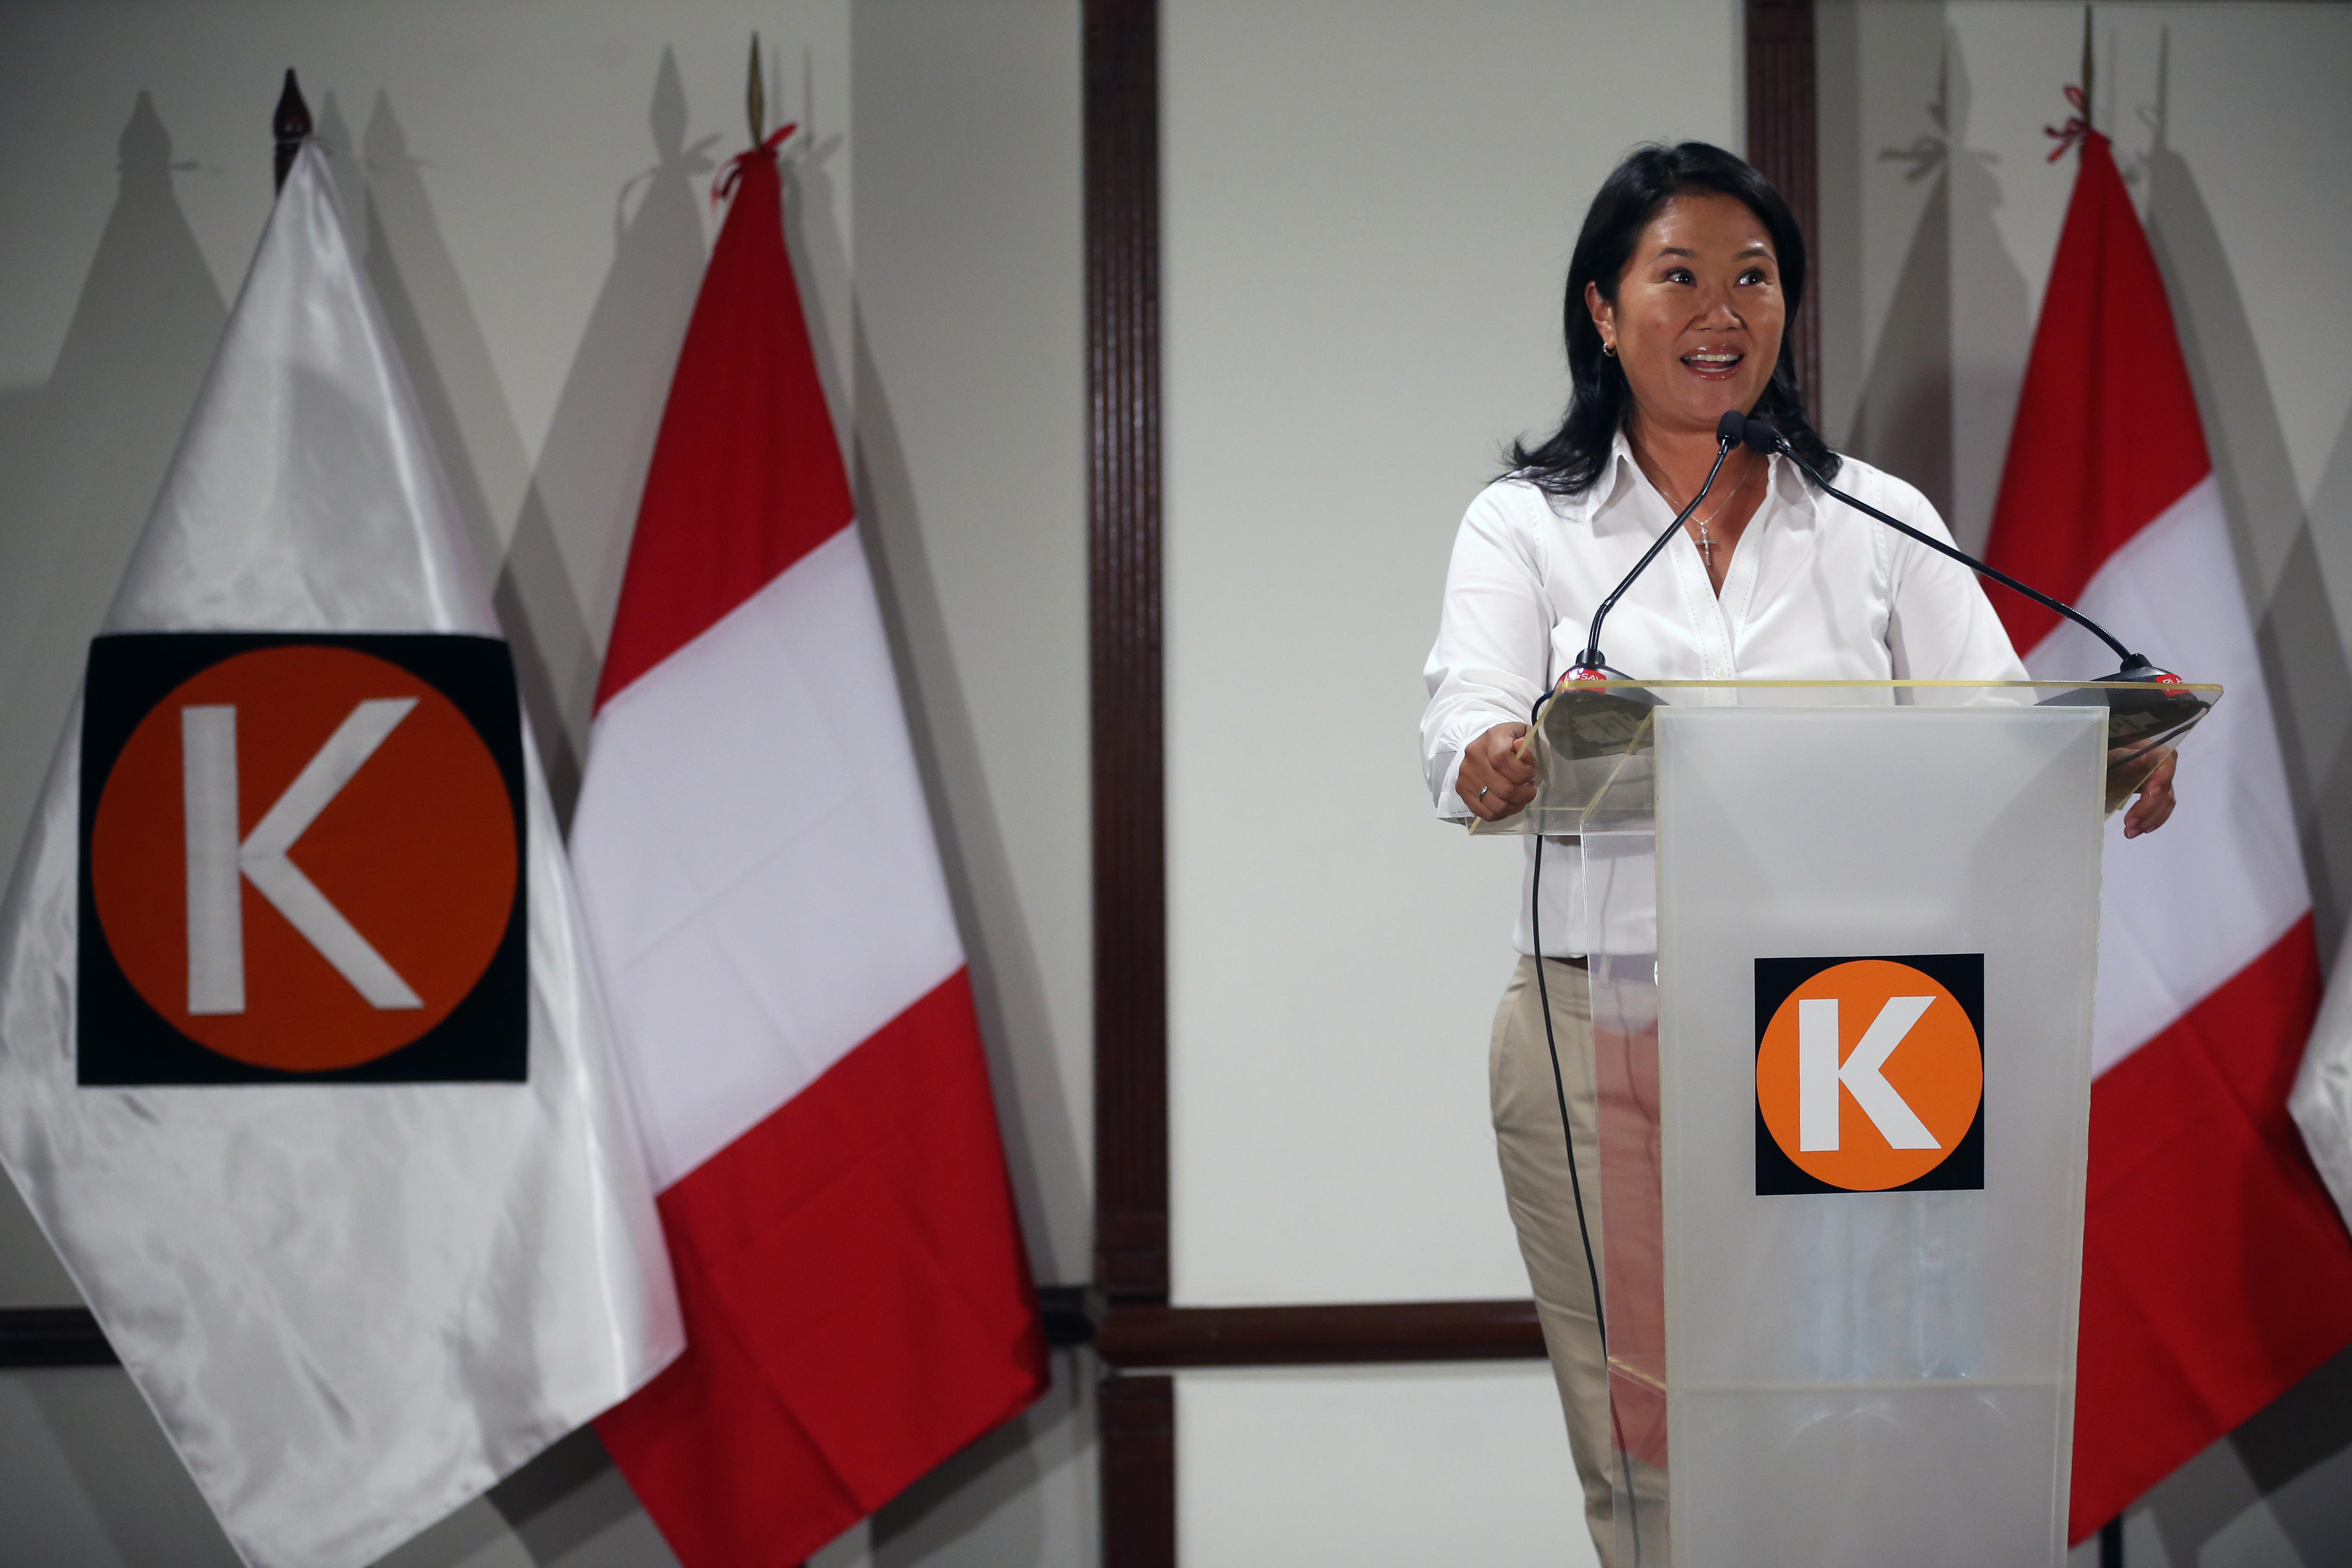 Imagen de Keiko Fujimori Elecciones Perú abril 2016